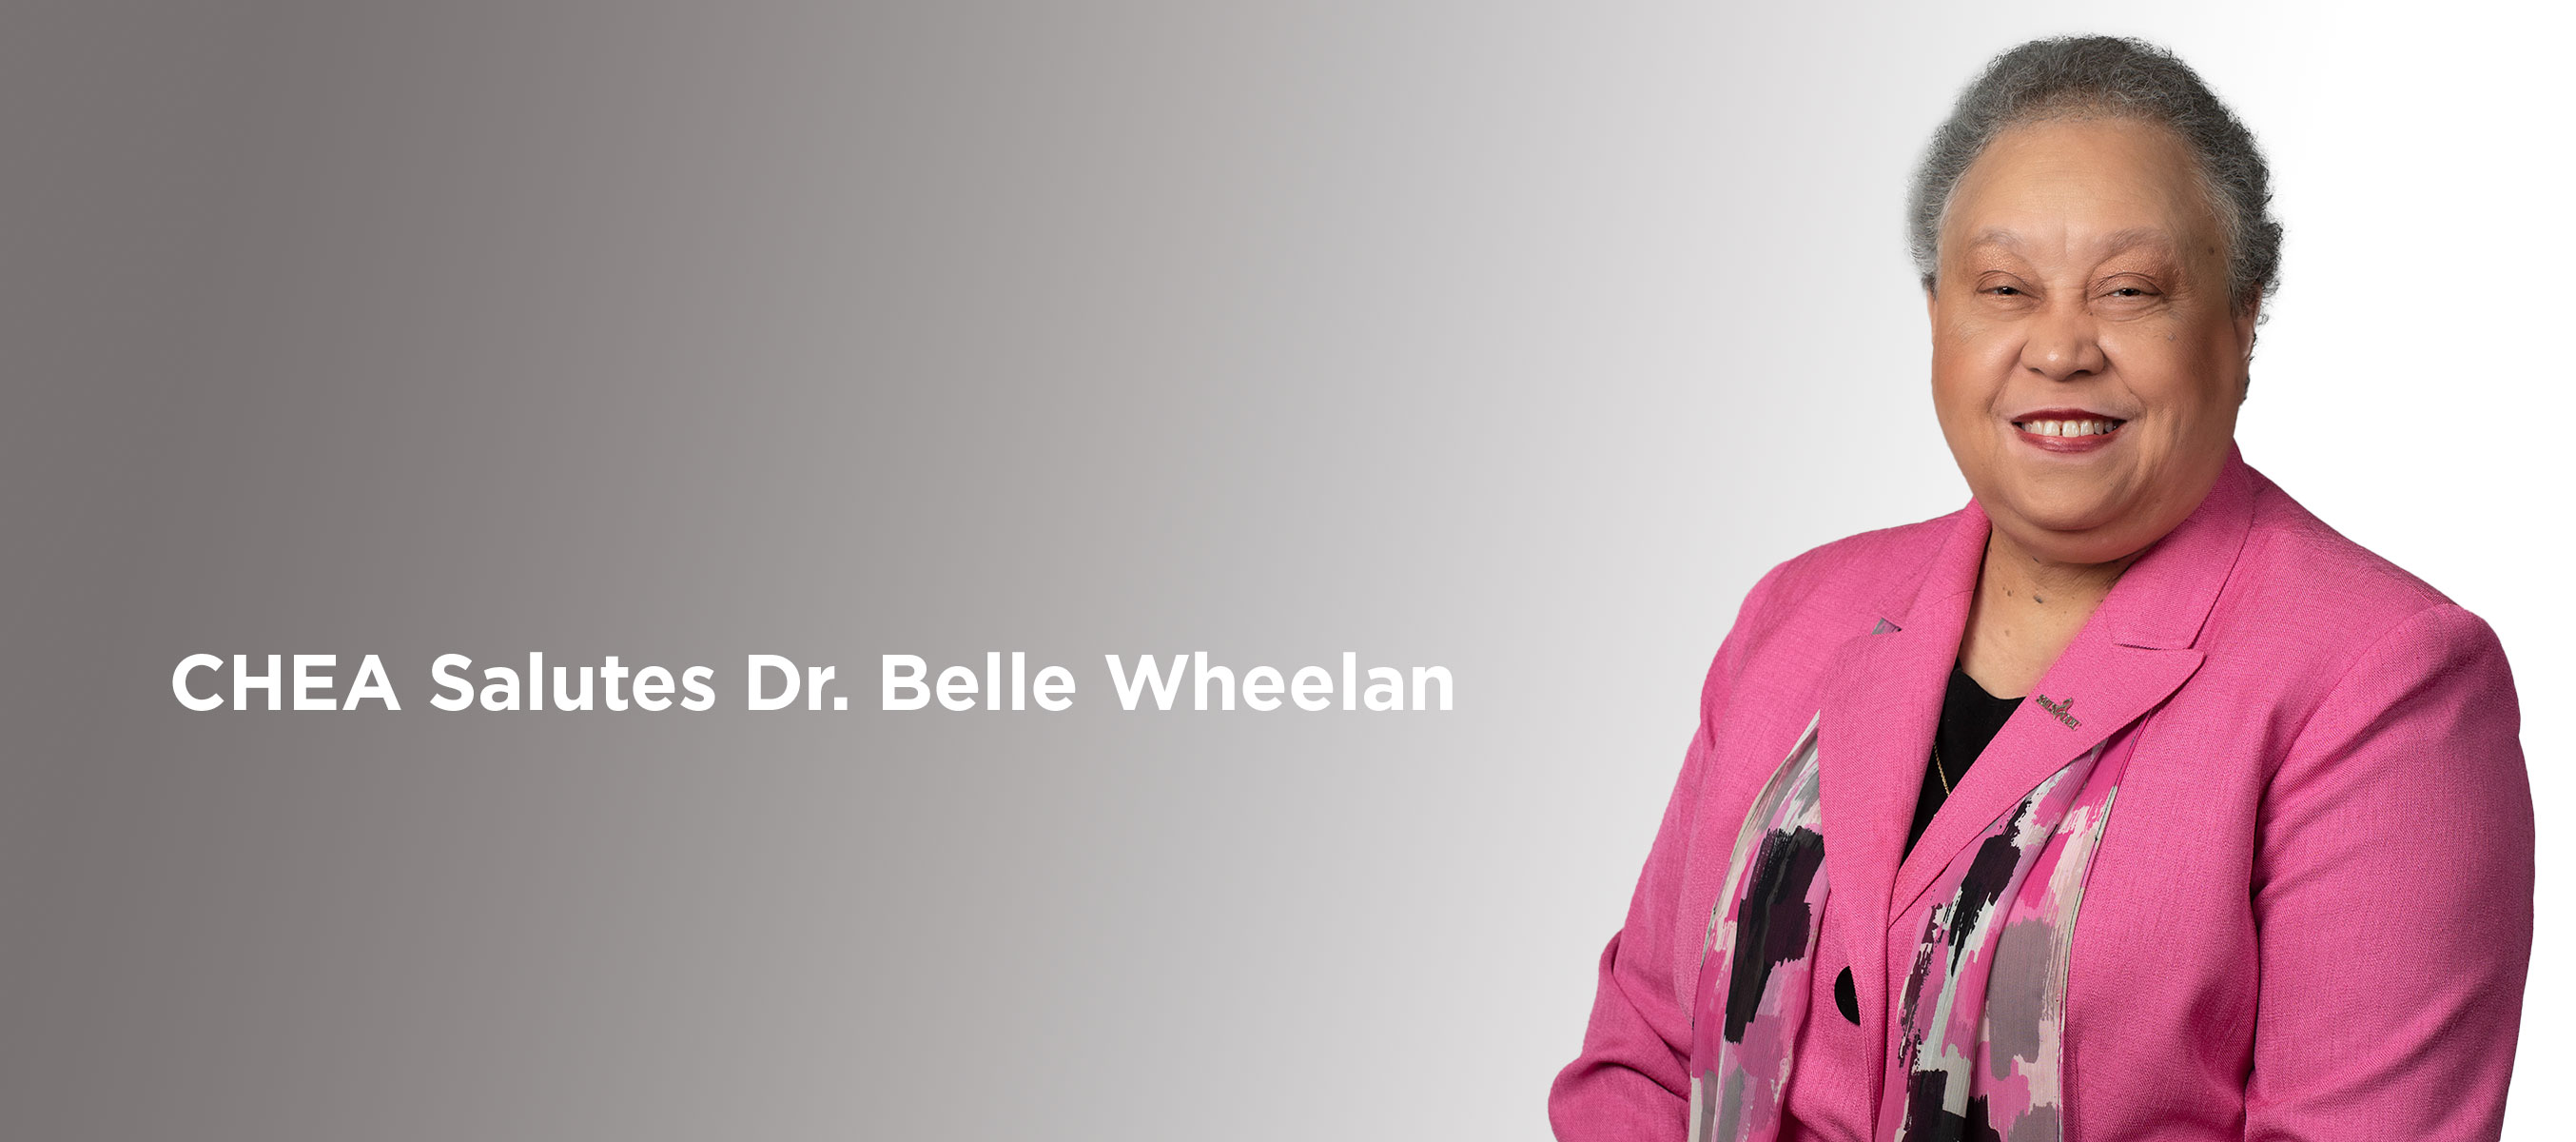 Dr. Belle Wheelan